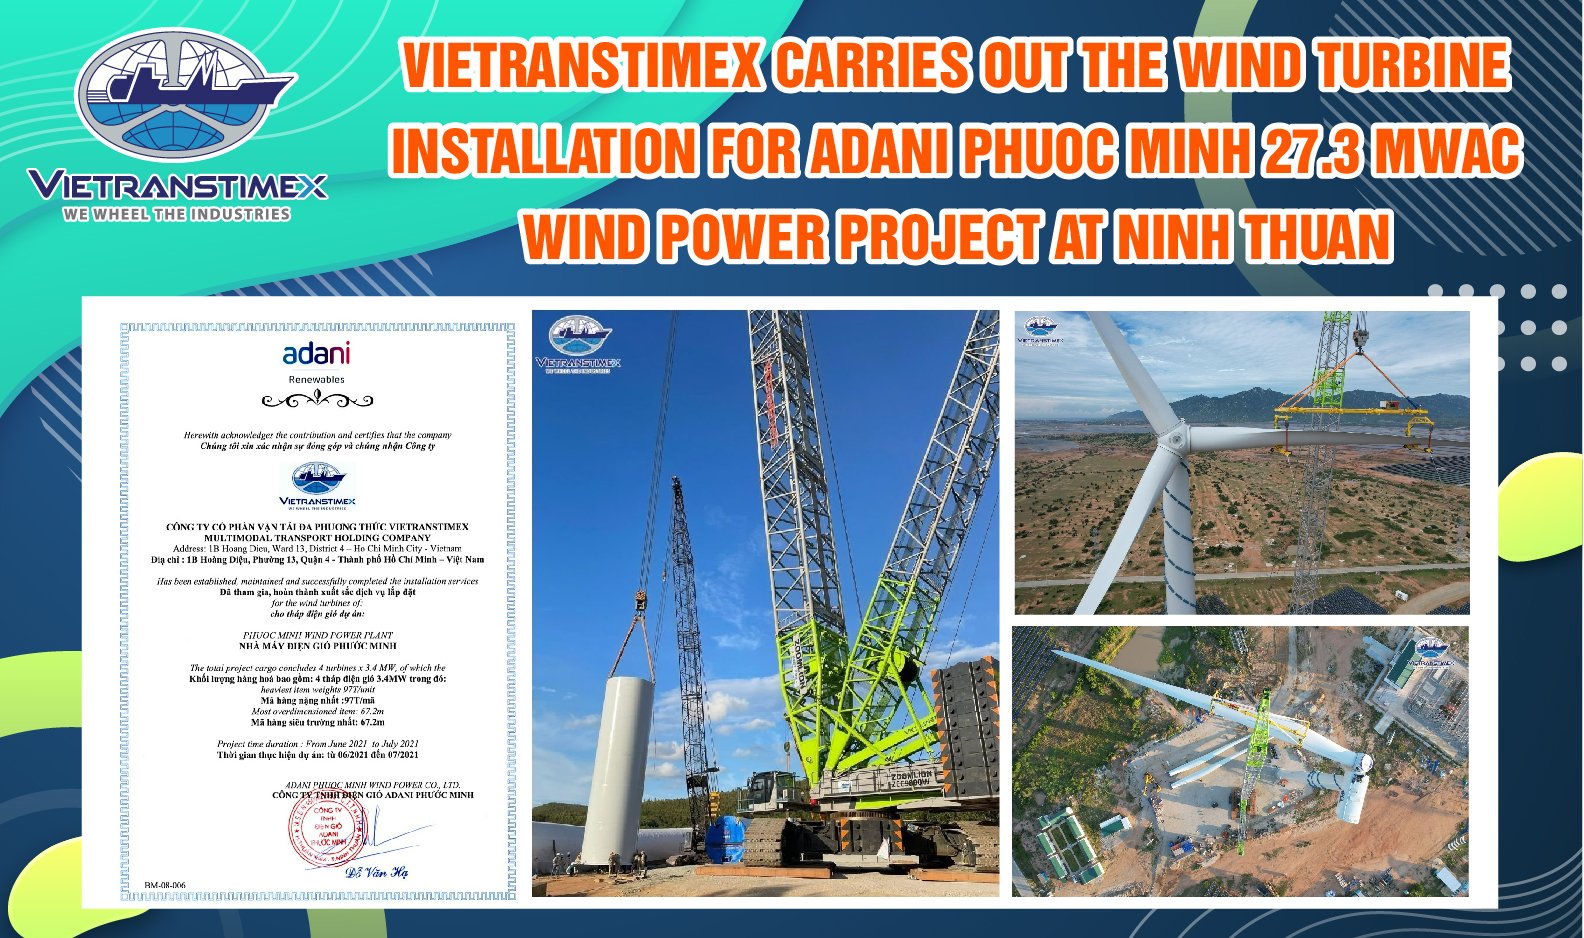 Vietranstimex Hoàn Thành Lắp Đặt Thành Công Trụ Điện Gió Tại Nhà Máy Điện Gió Adani Phước Minh, Thuận Nam, Ninh Thuận